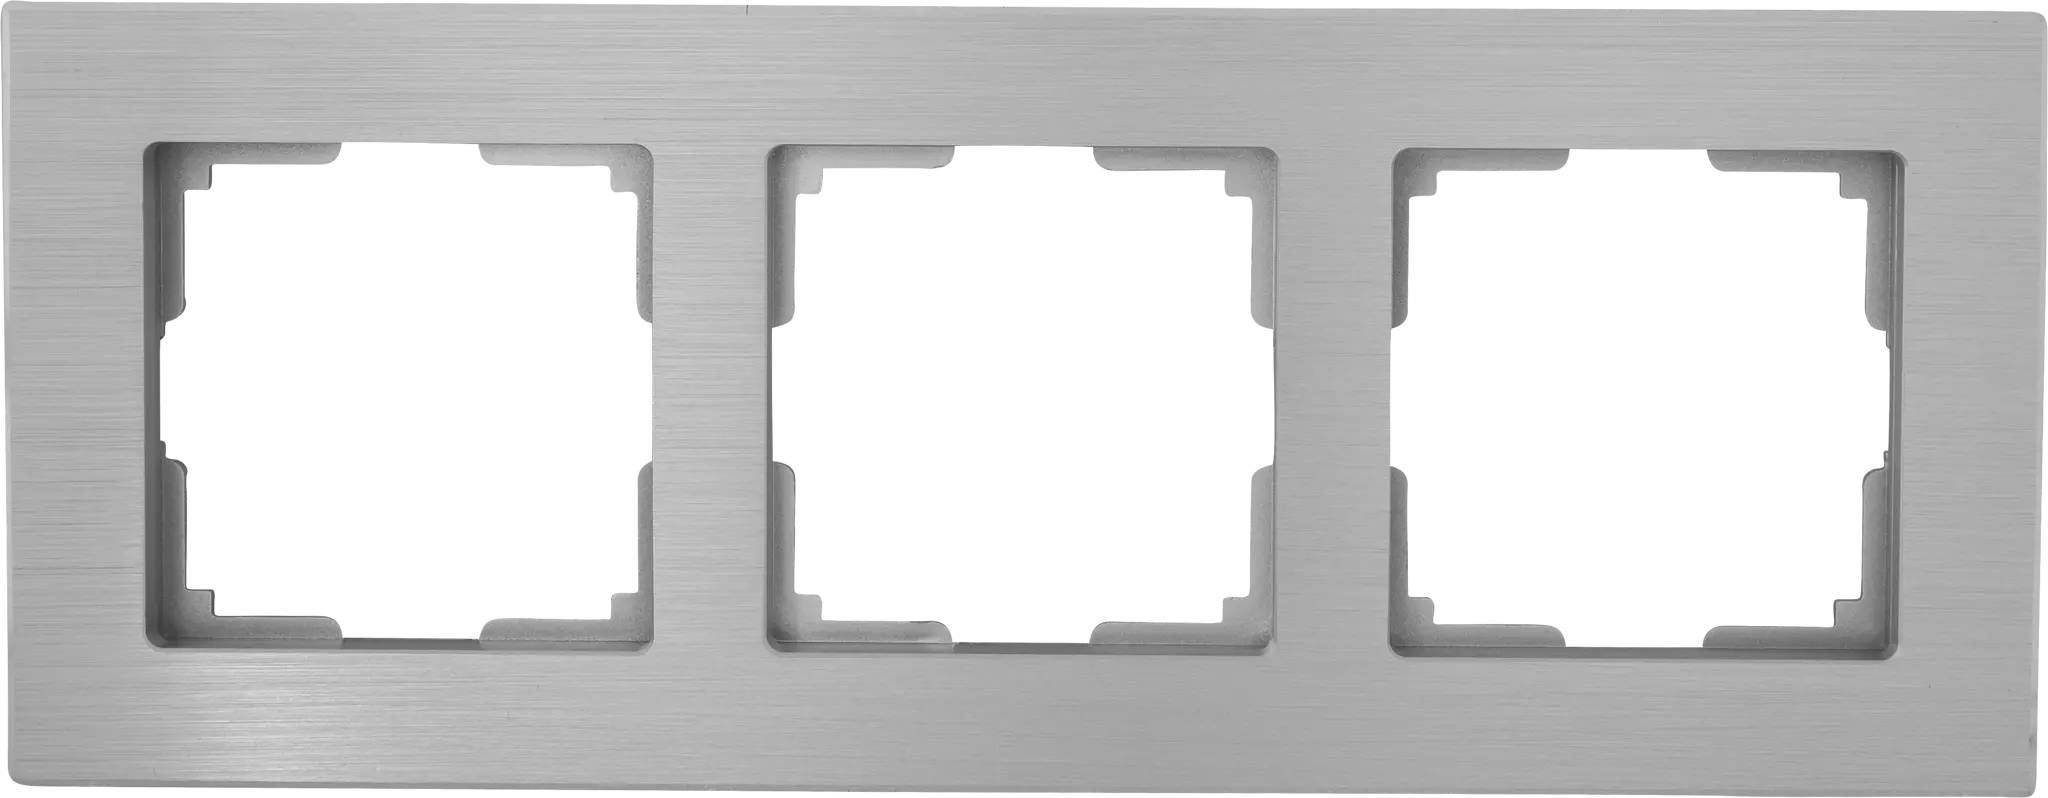 Рамка для розеток и выключателей Werkel Aluminium 3 поста, металл, цвет алюминий рамка на 4 поста werkel aluminium w0041706 4690389158070